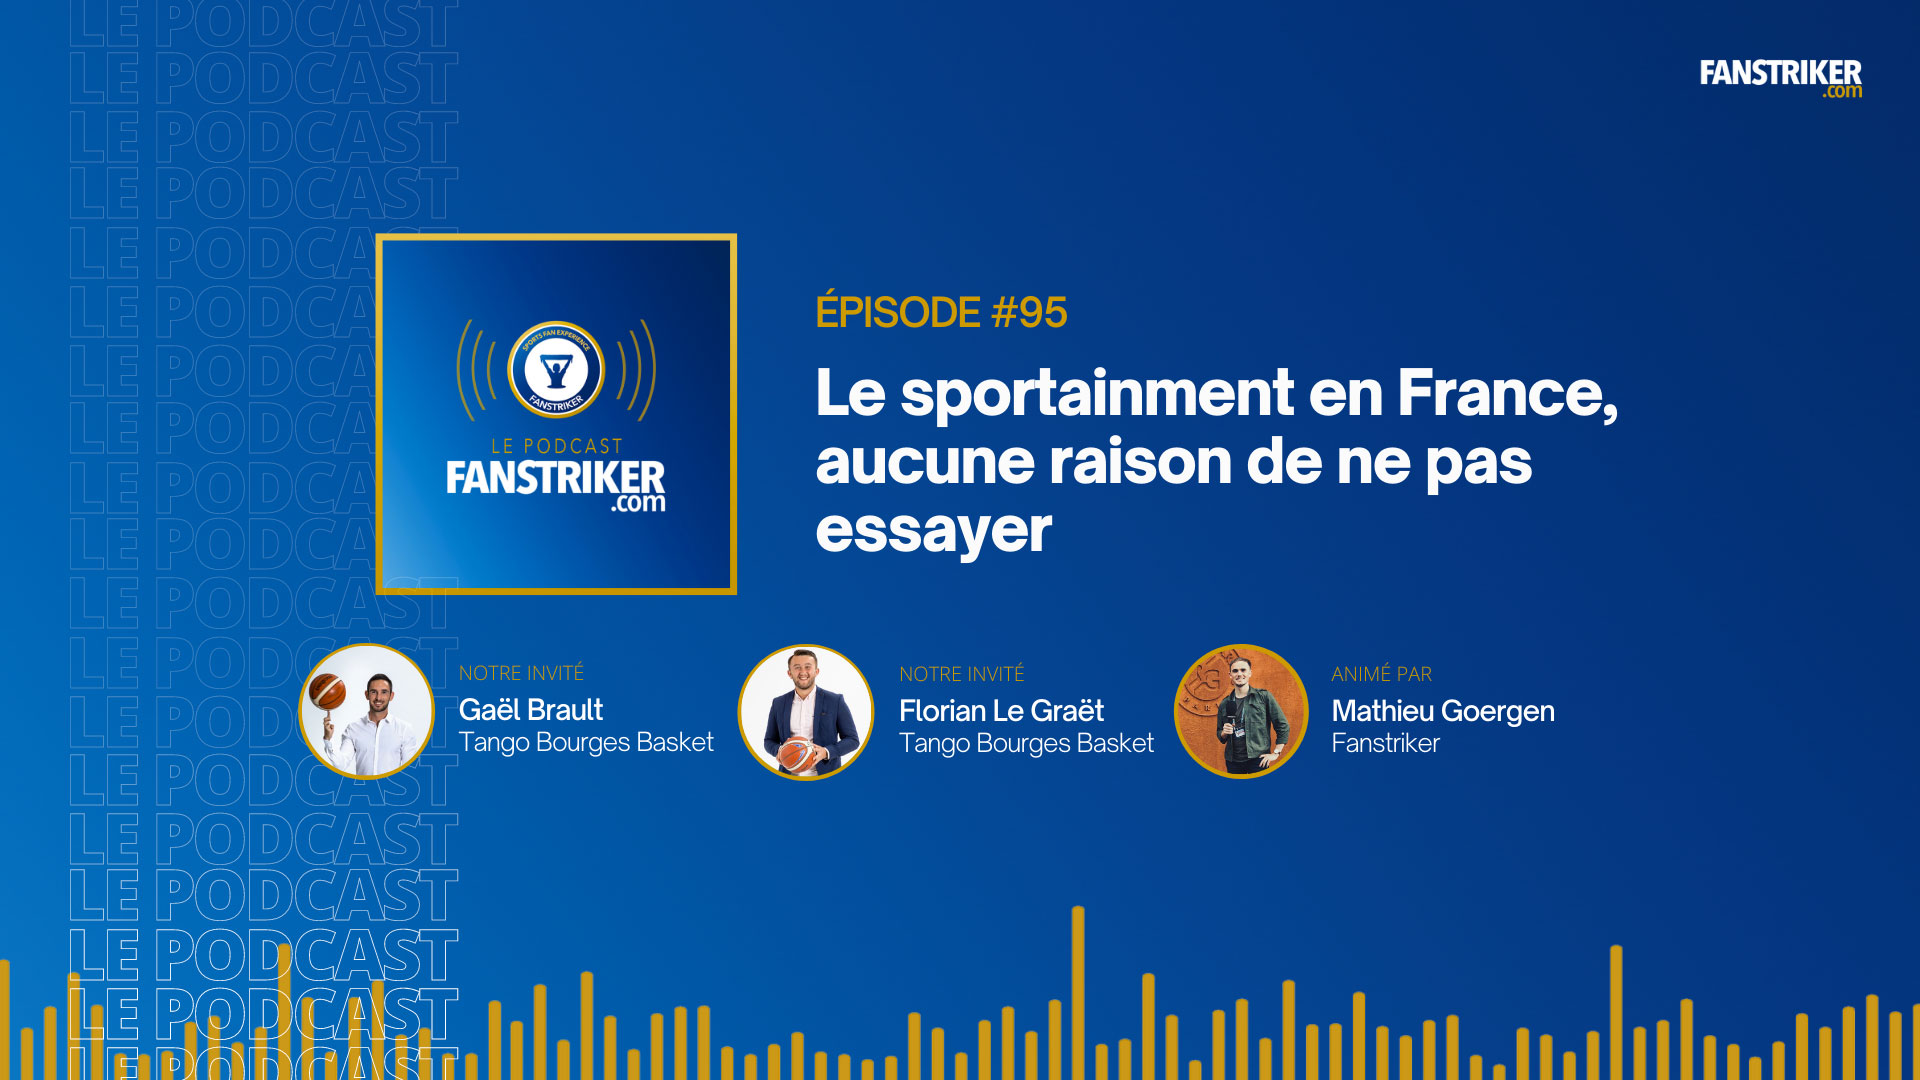 Podcast #95 | Gaël et Florian (Tango Bourges Basket) - Le sportainment en France, il n'y a aucune raison de ne pas essayer